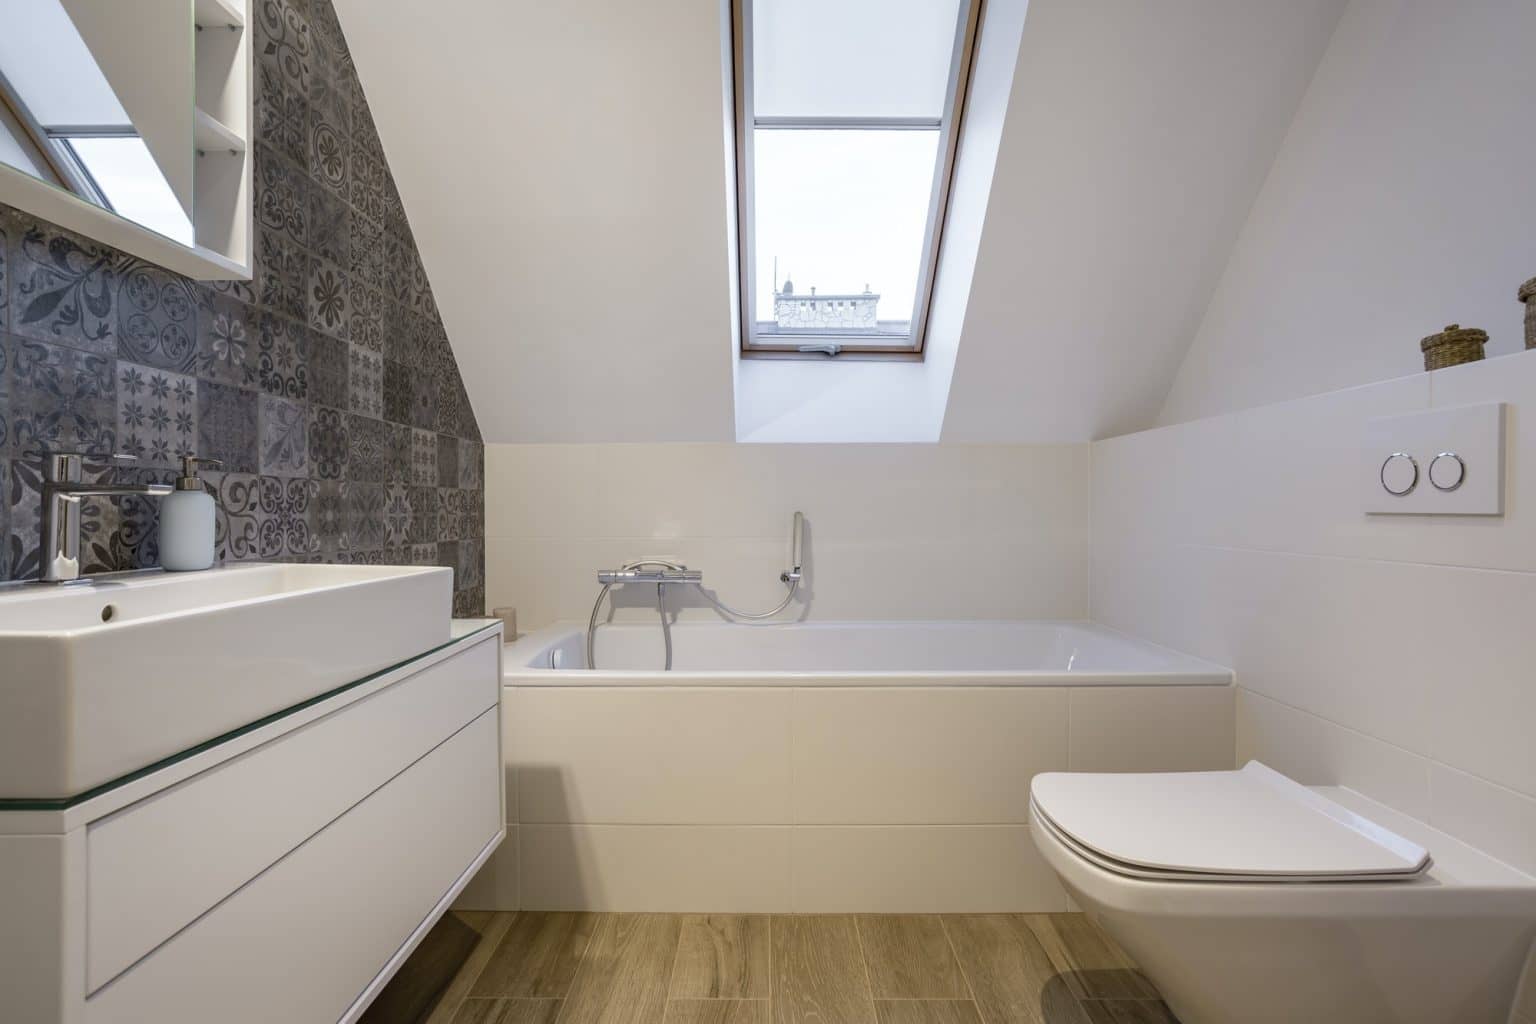 Loft bathroom with bathtub in Blidworth